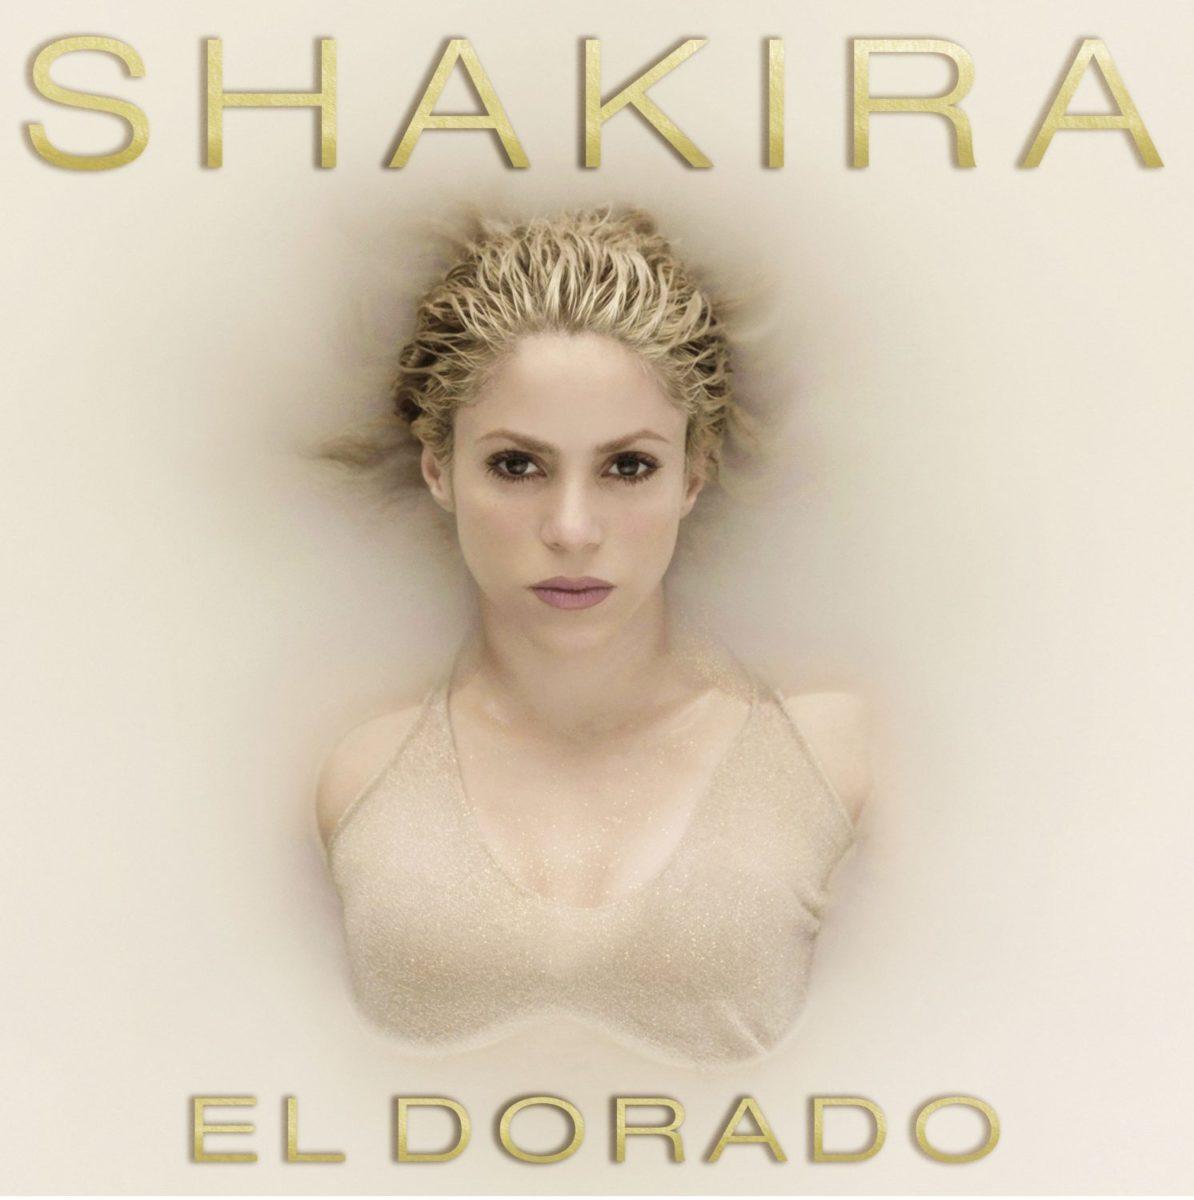 Shakira wydaje nową płytę - "El Dorado" w sklepach od 26 maja